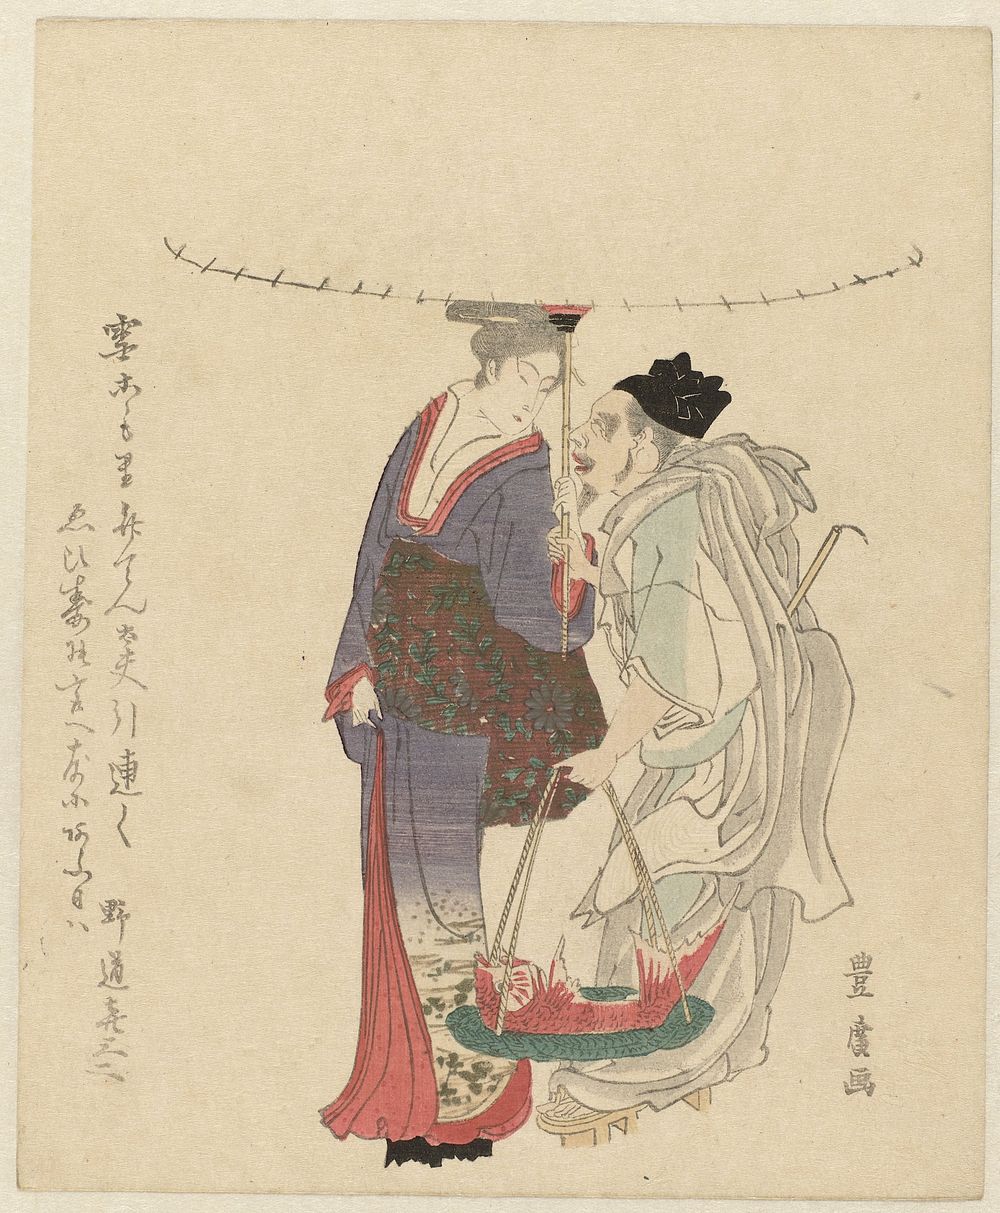 De geluksgod Ebisu met een vrouw (c. 1890 - c. 1900) by Utagawa Toyohiro